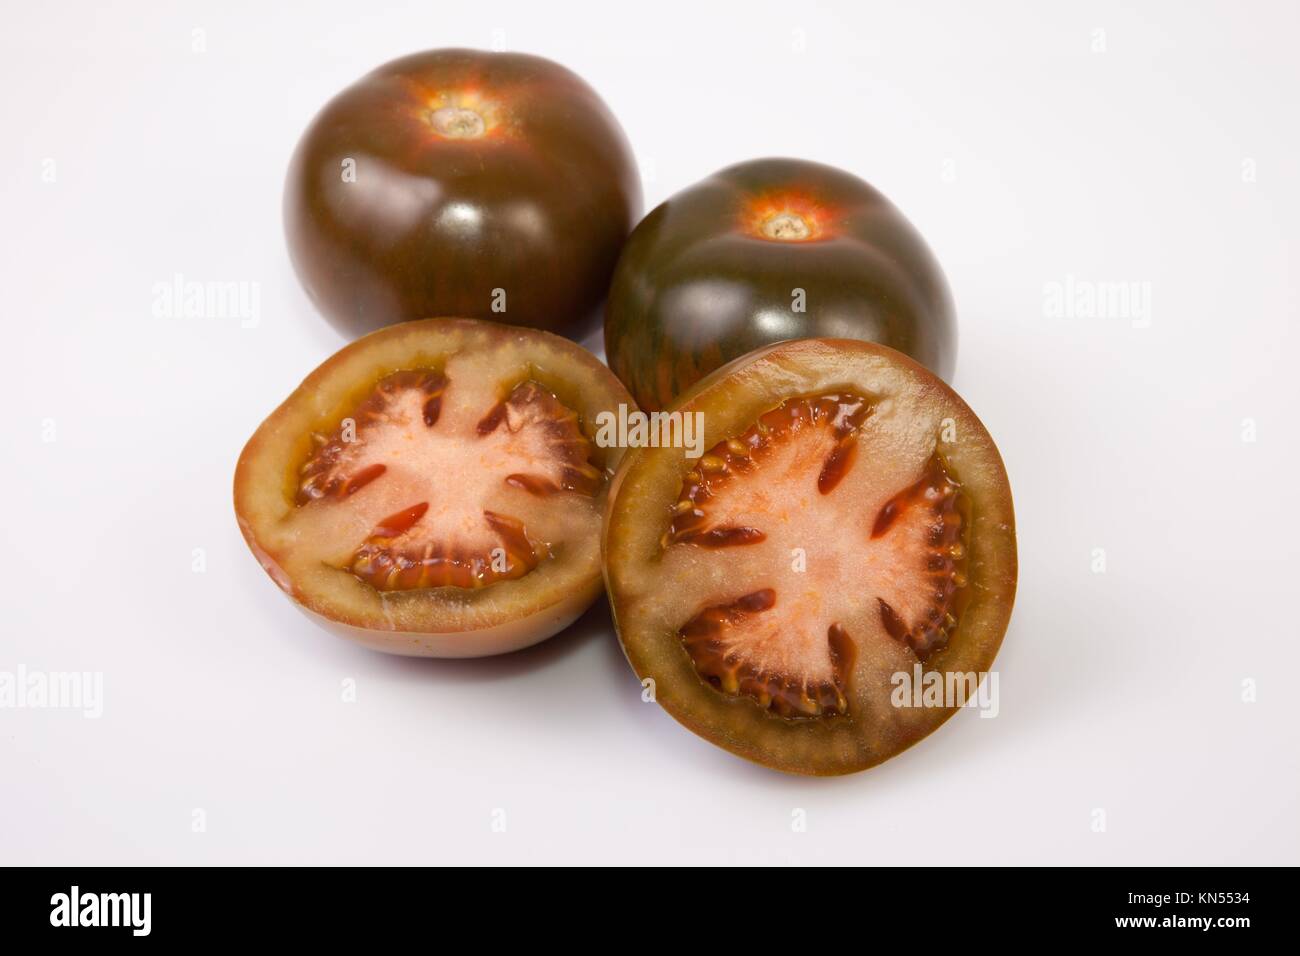 Les tomates kumato vert foncé, entières ou coupées en tranches. Plus isolé sur fond blanc. Banque D'Images